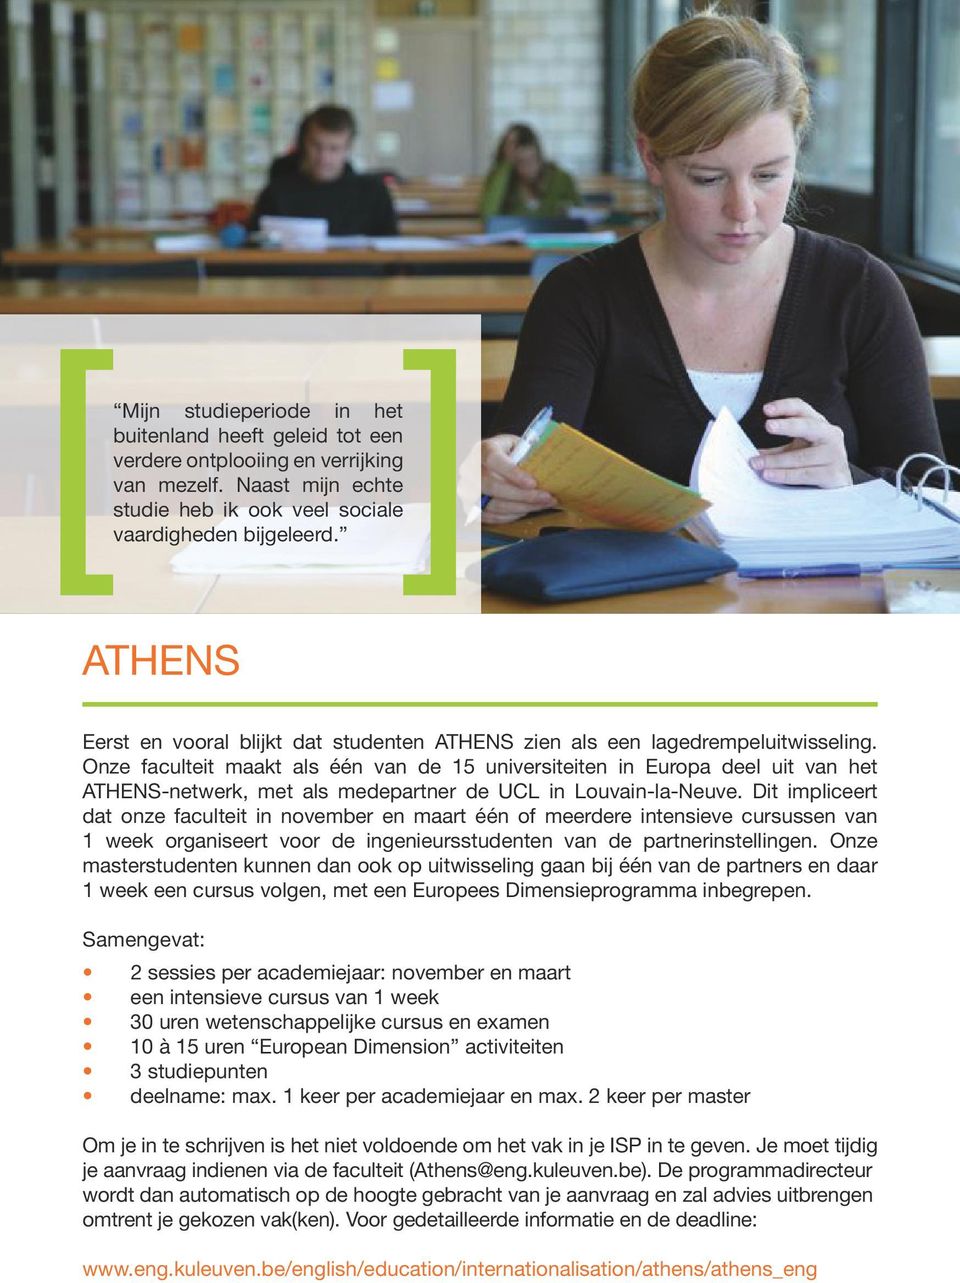 Onze faculteit maakt als één van de 15 universiteiten in Europa deel uit van het ATHENS-netwerk, met als medepartner de UCL in Louvain-la-Neuve.